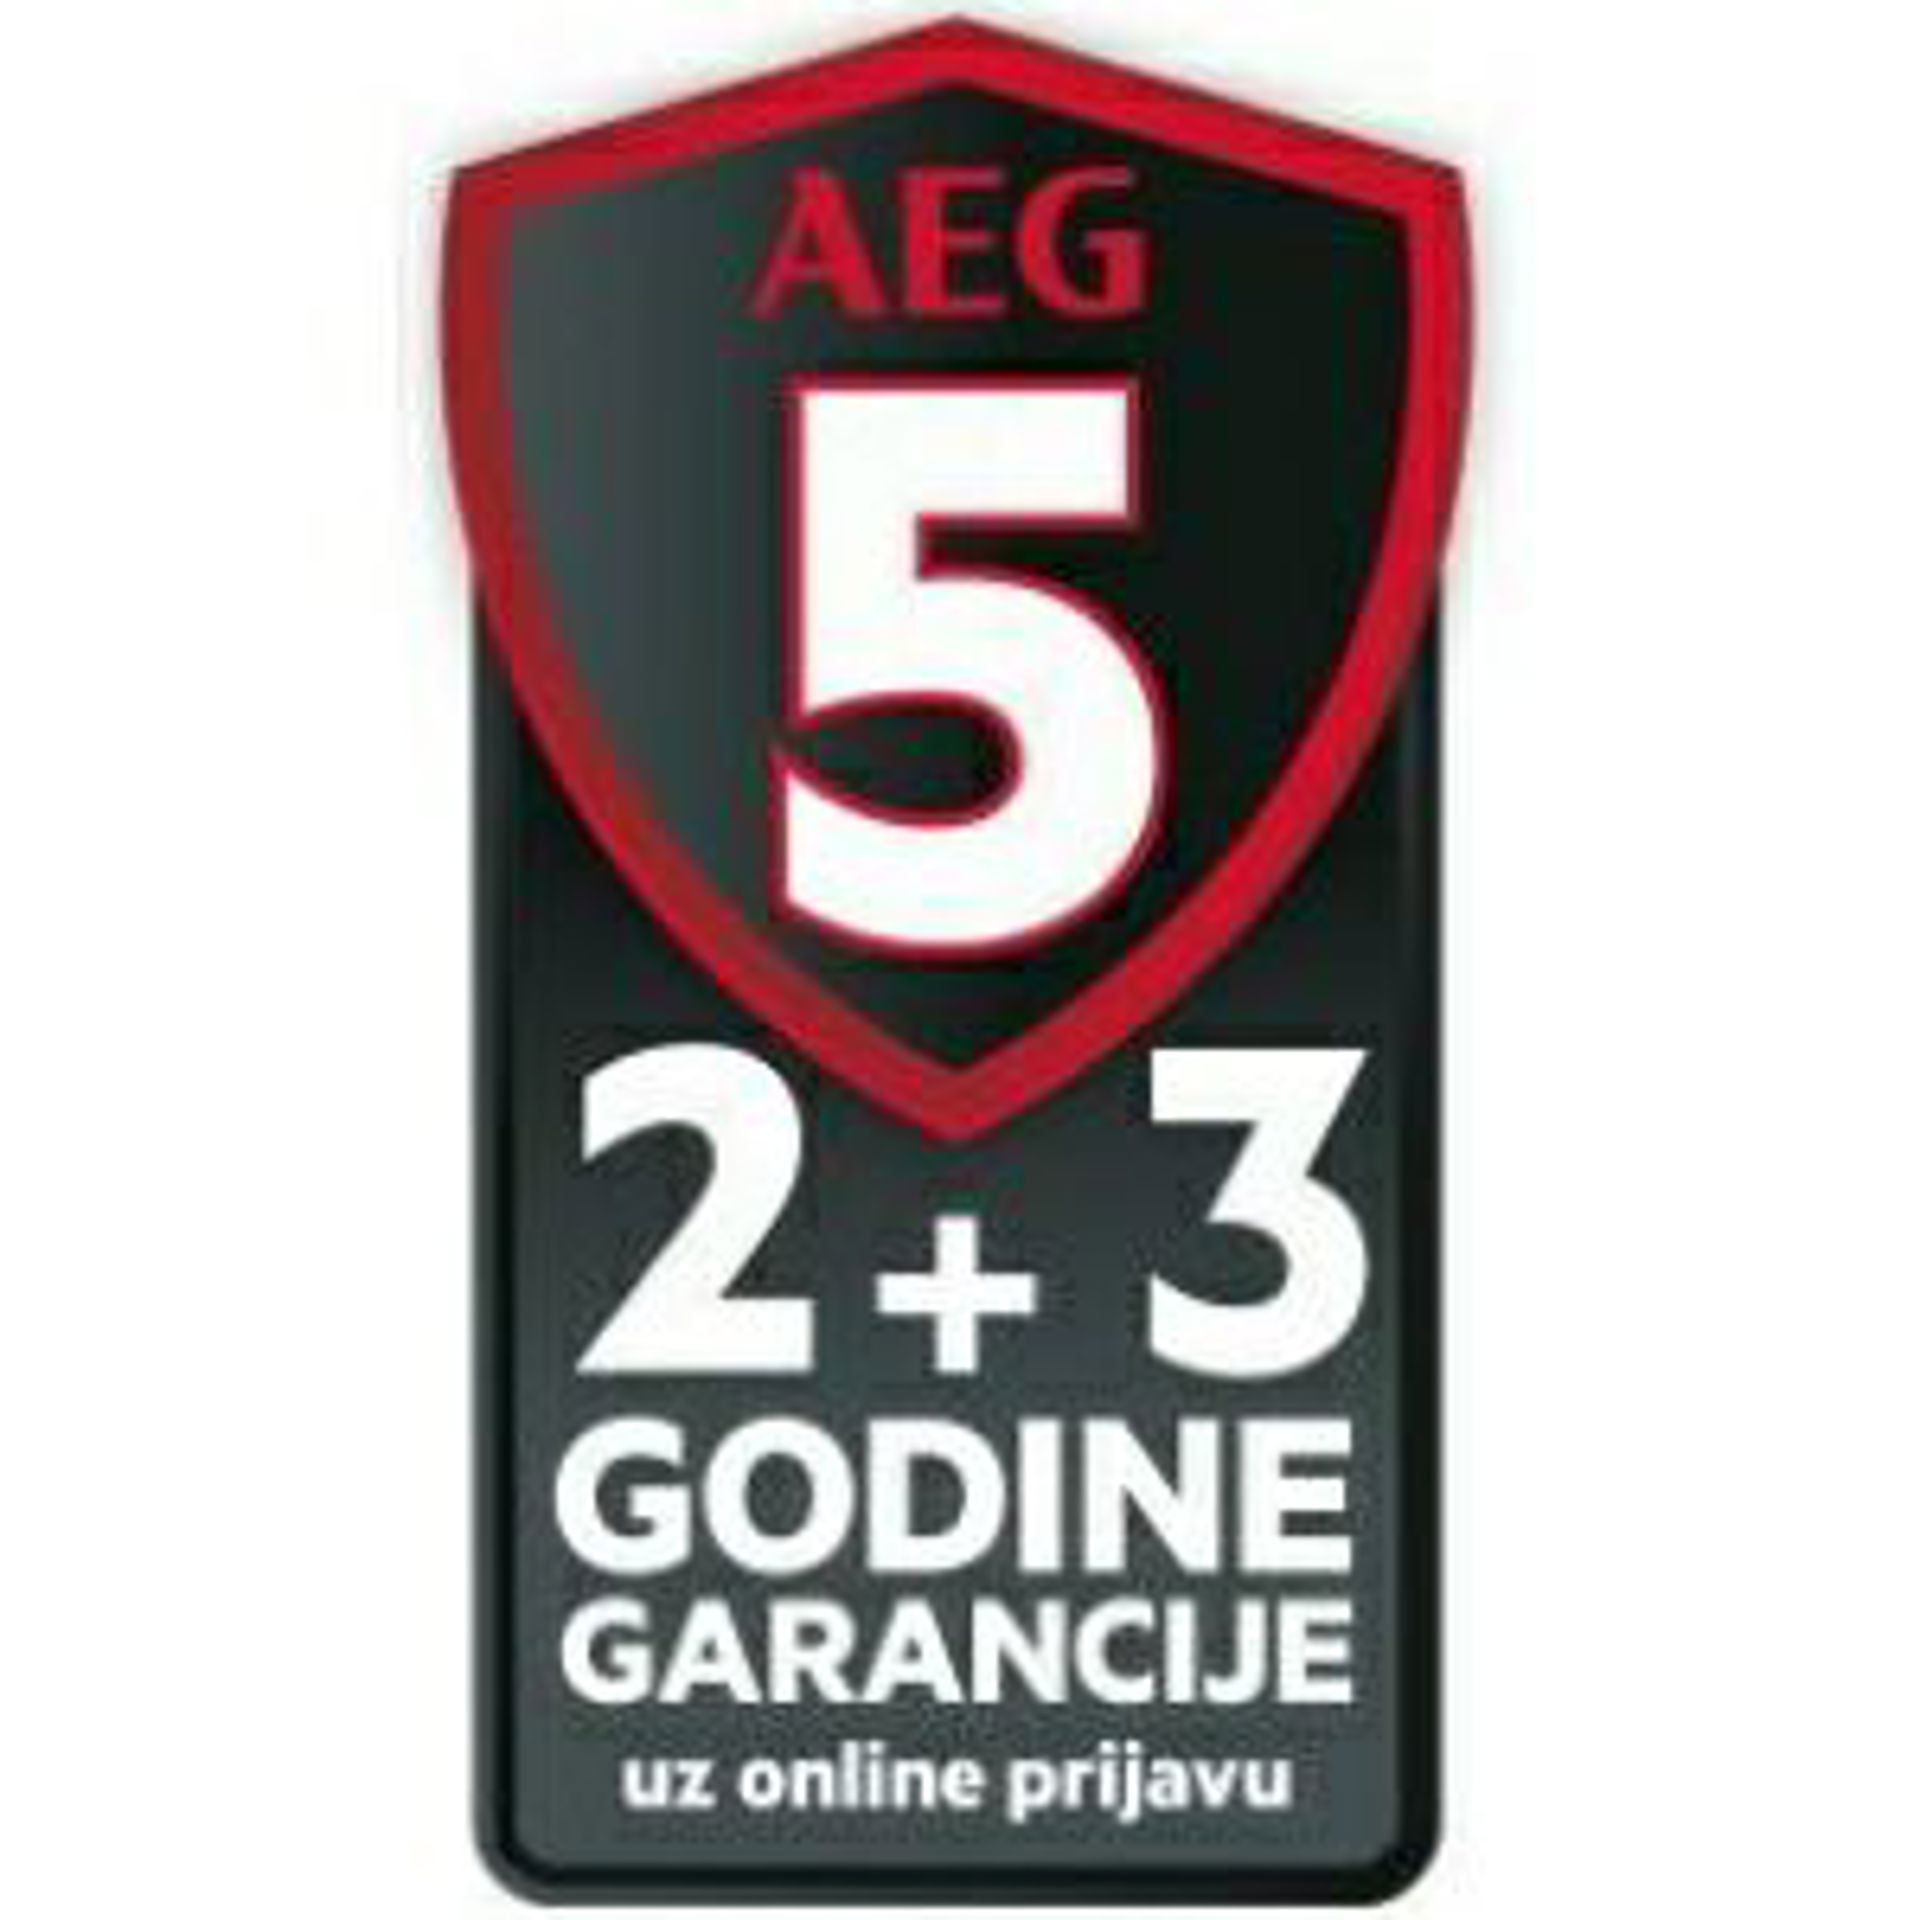 Bijela tehnika AEG sa 2 + 3 godina garancije